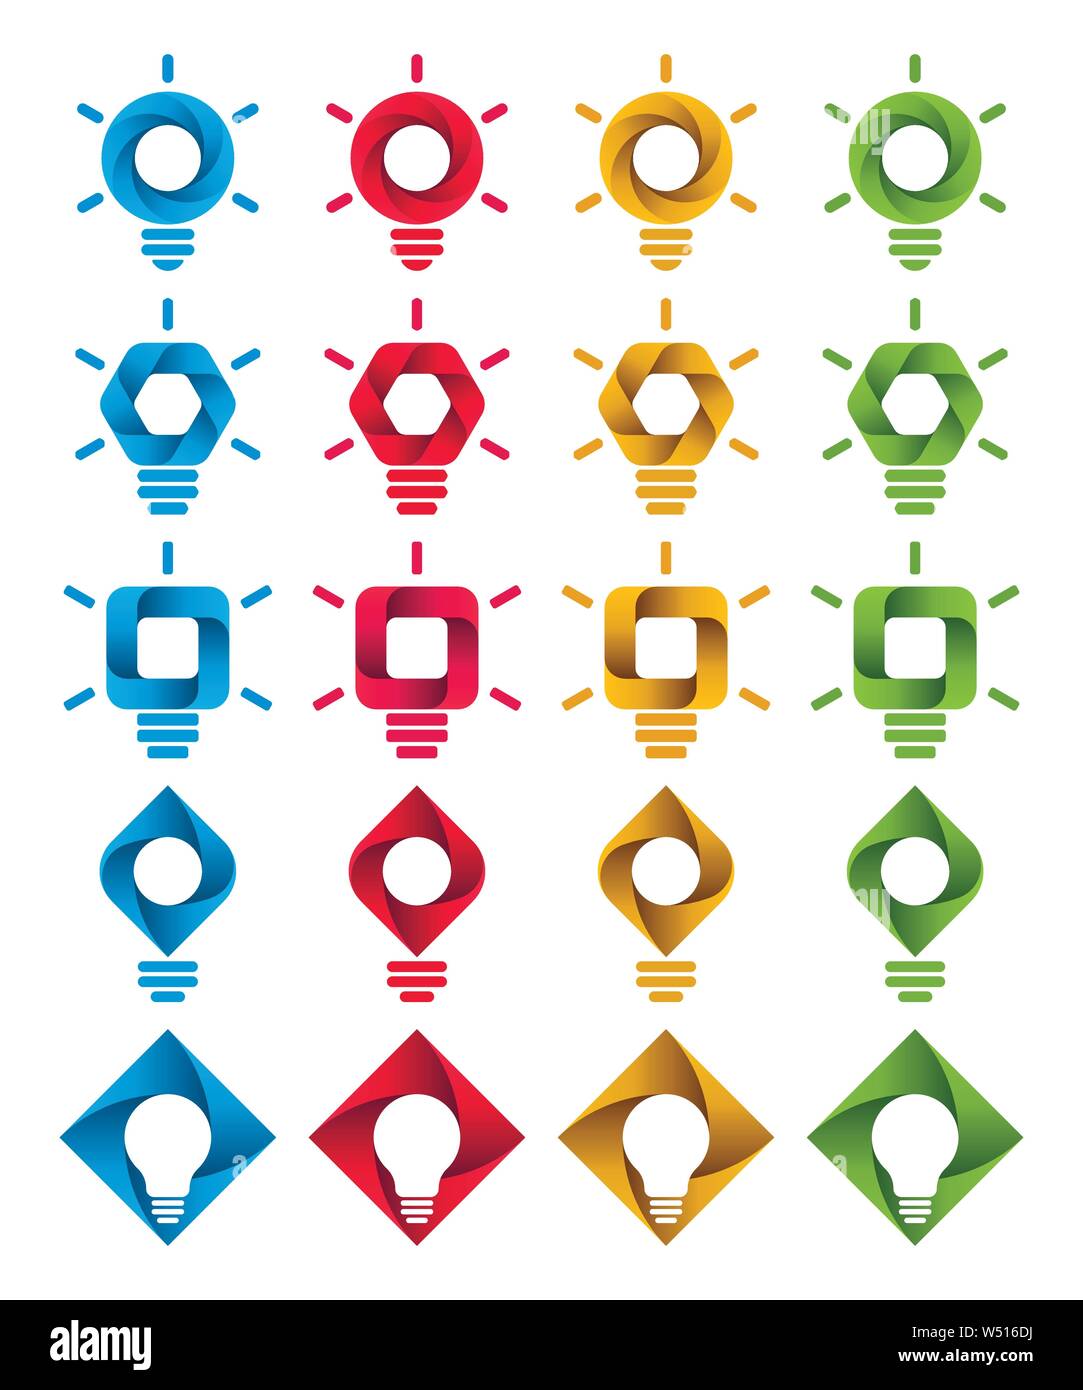 Spirale lampada a forma di simboli su sfondo bianco. Infografico icone della lampadina. Illustrazione Vettoriale